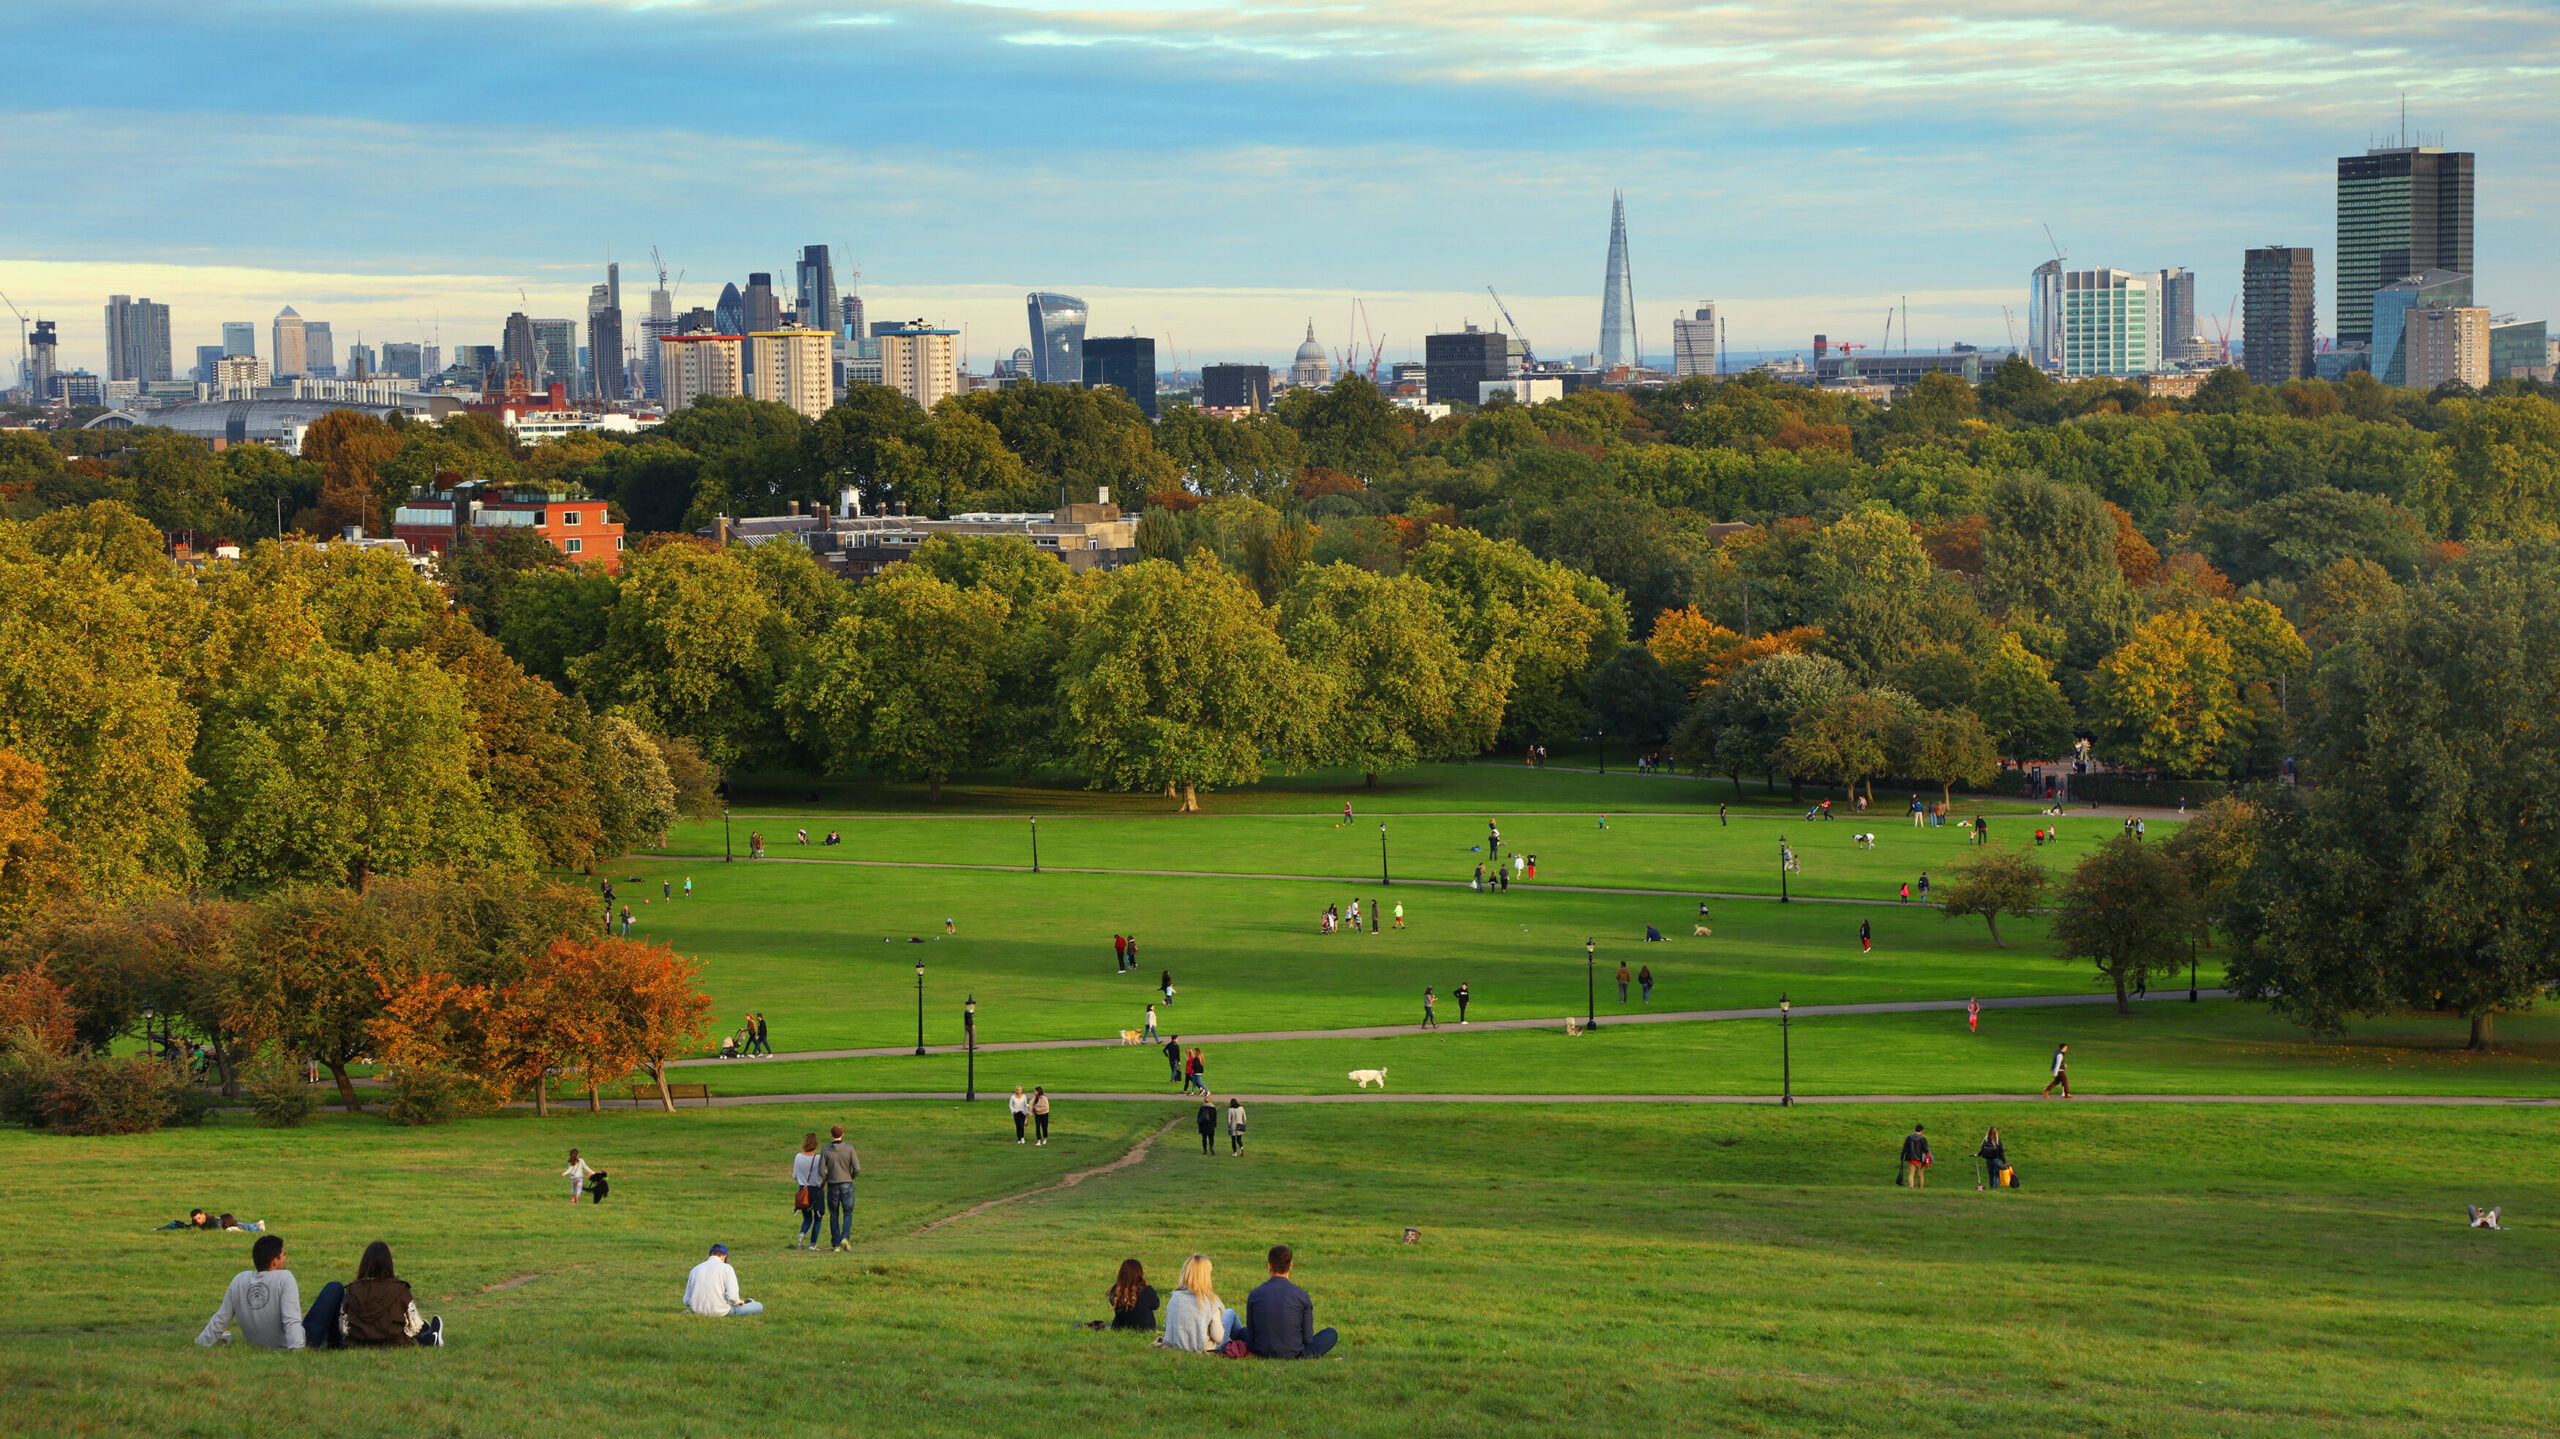 Regents Park - London’s Best Parks